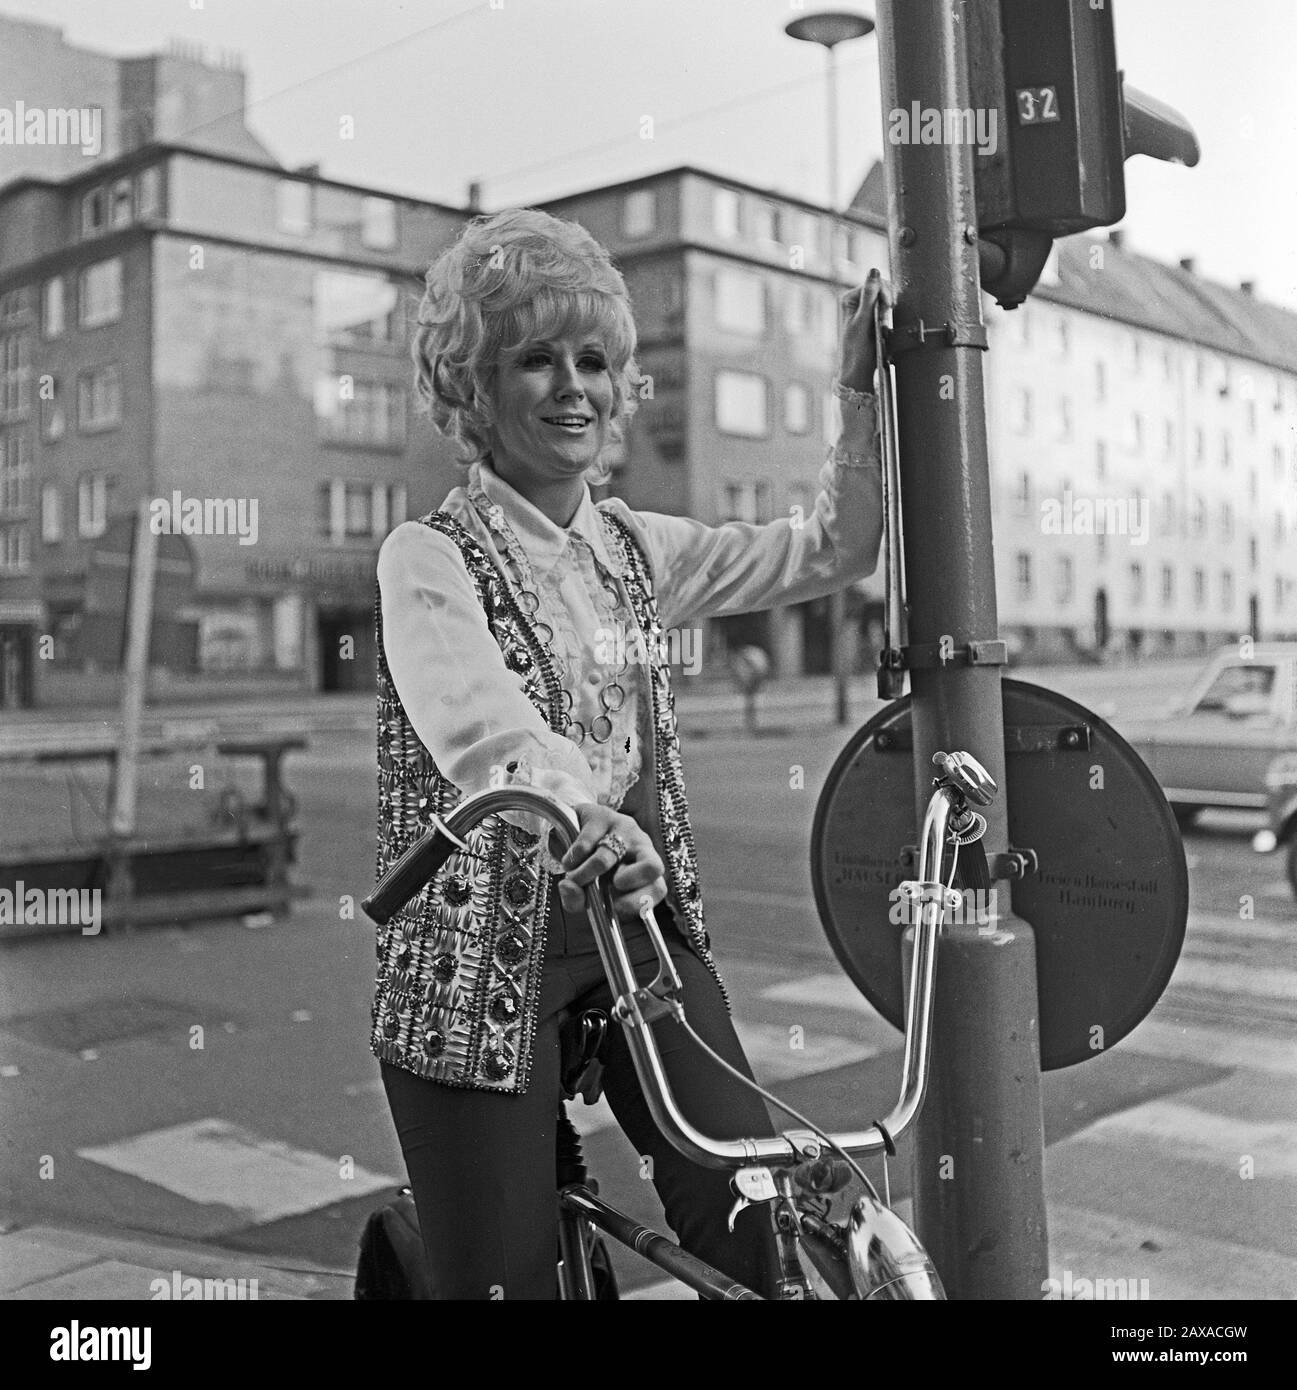 Dusty Springfield, britische Pop- und Soulsängerin, bei einem Besuch à Hambourg auf dem Fahrrad, Deutschland 1970. Chanteuse britannique de pop et d'âme Dusty Springfield à vélo lors d'une visite à Hambourg, Allemagne 1970. Banque D'Images